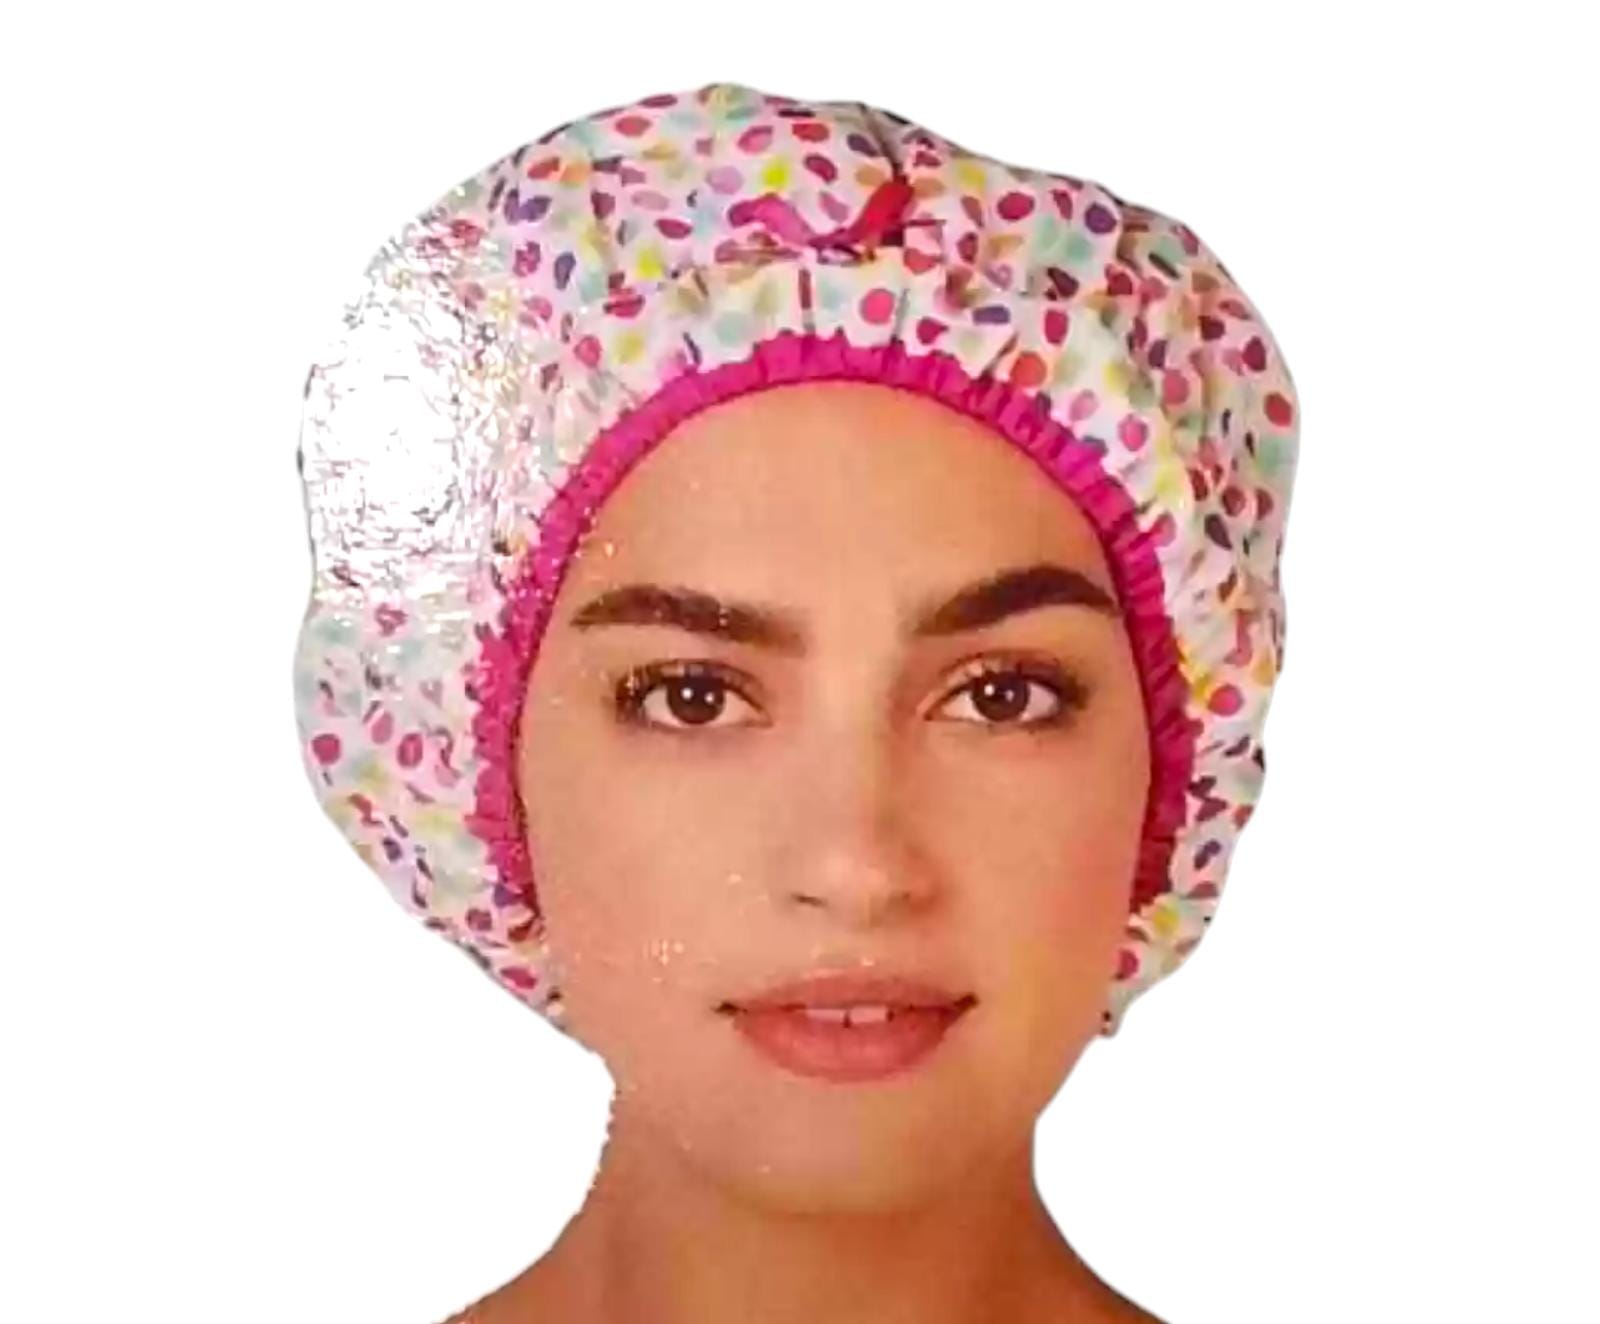 Hair turban shower cap